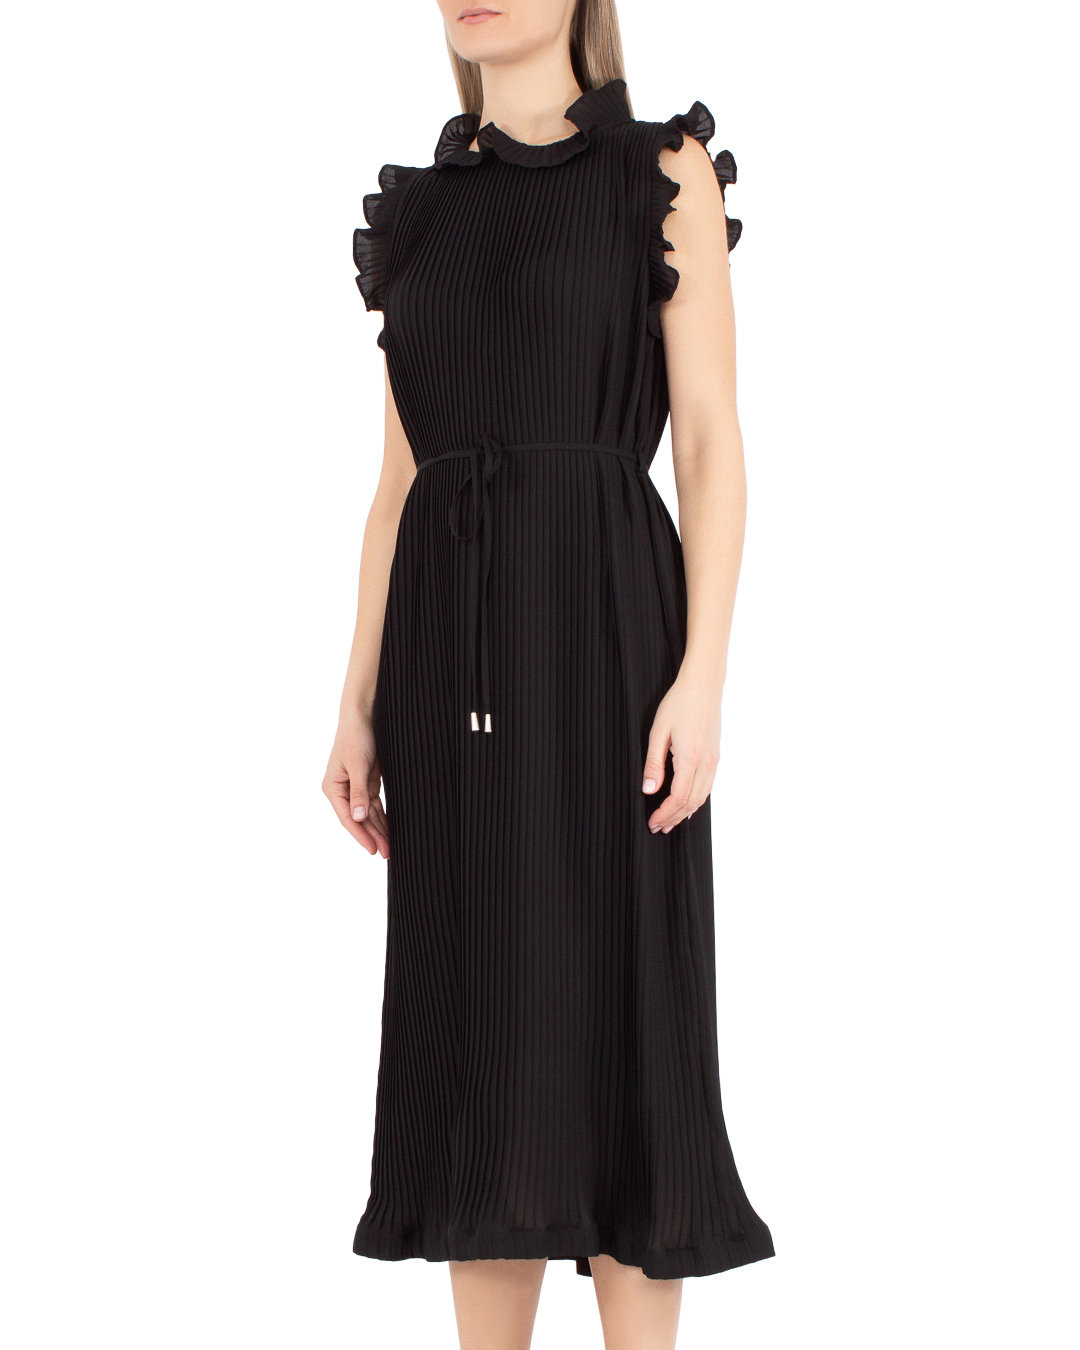 платье MEIMEIJ M4EH04 черный 40, размер 40 - фото 3